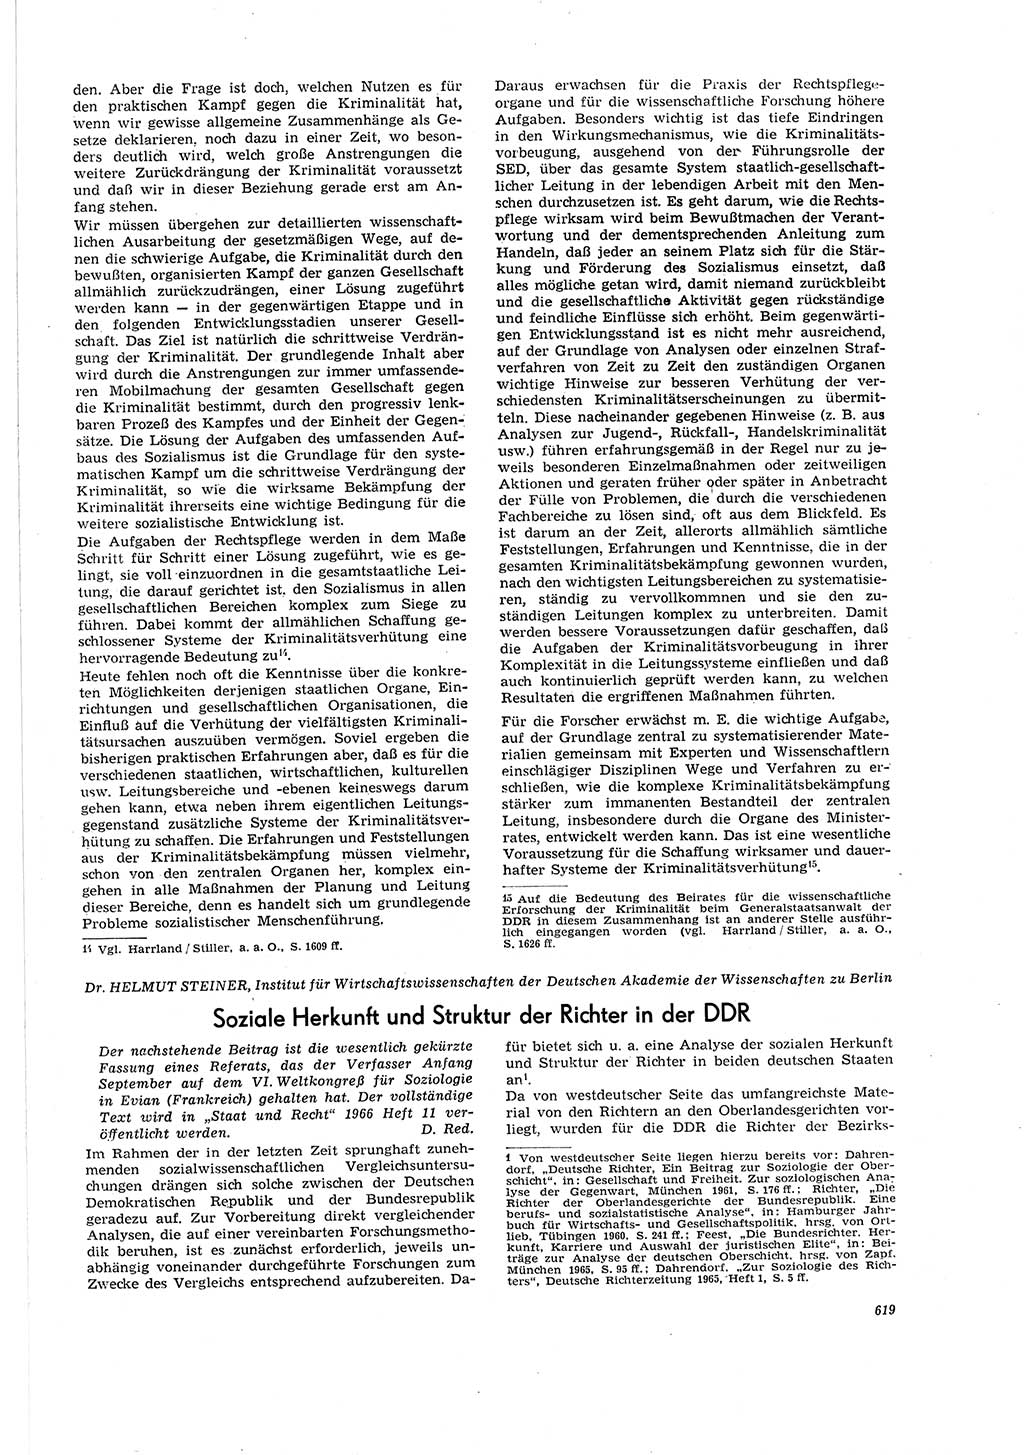 Neue Justiz (NJ), Zeitschrift für Recht und Rechtswissenschaft [Deutsche Demokratische Republik (DDR)], 20. Jahrgang 1966, Seite 619 (NJ DDR 1966, S. 619)